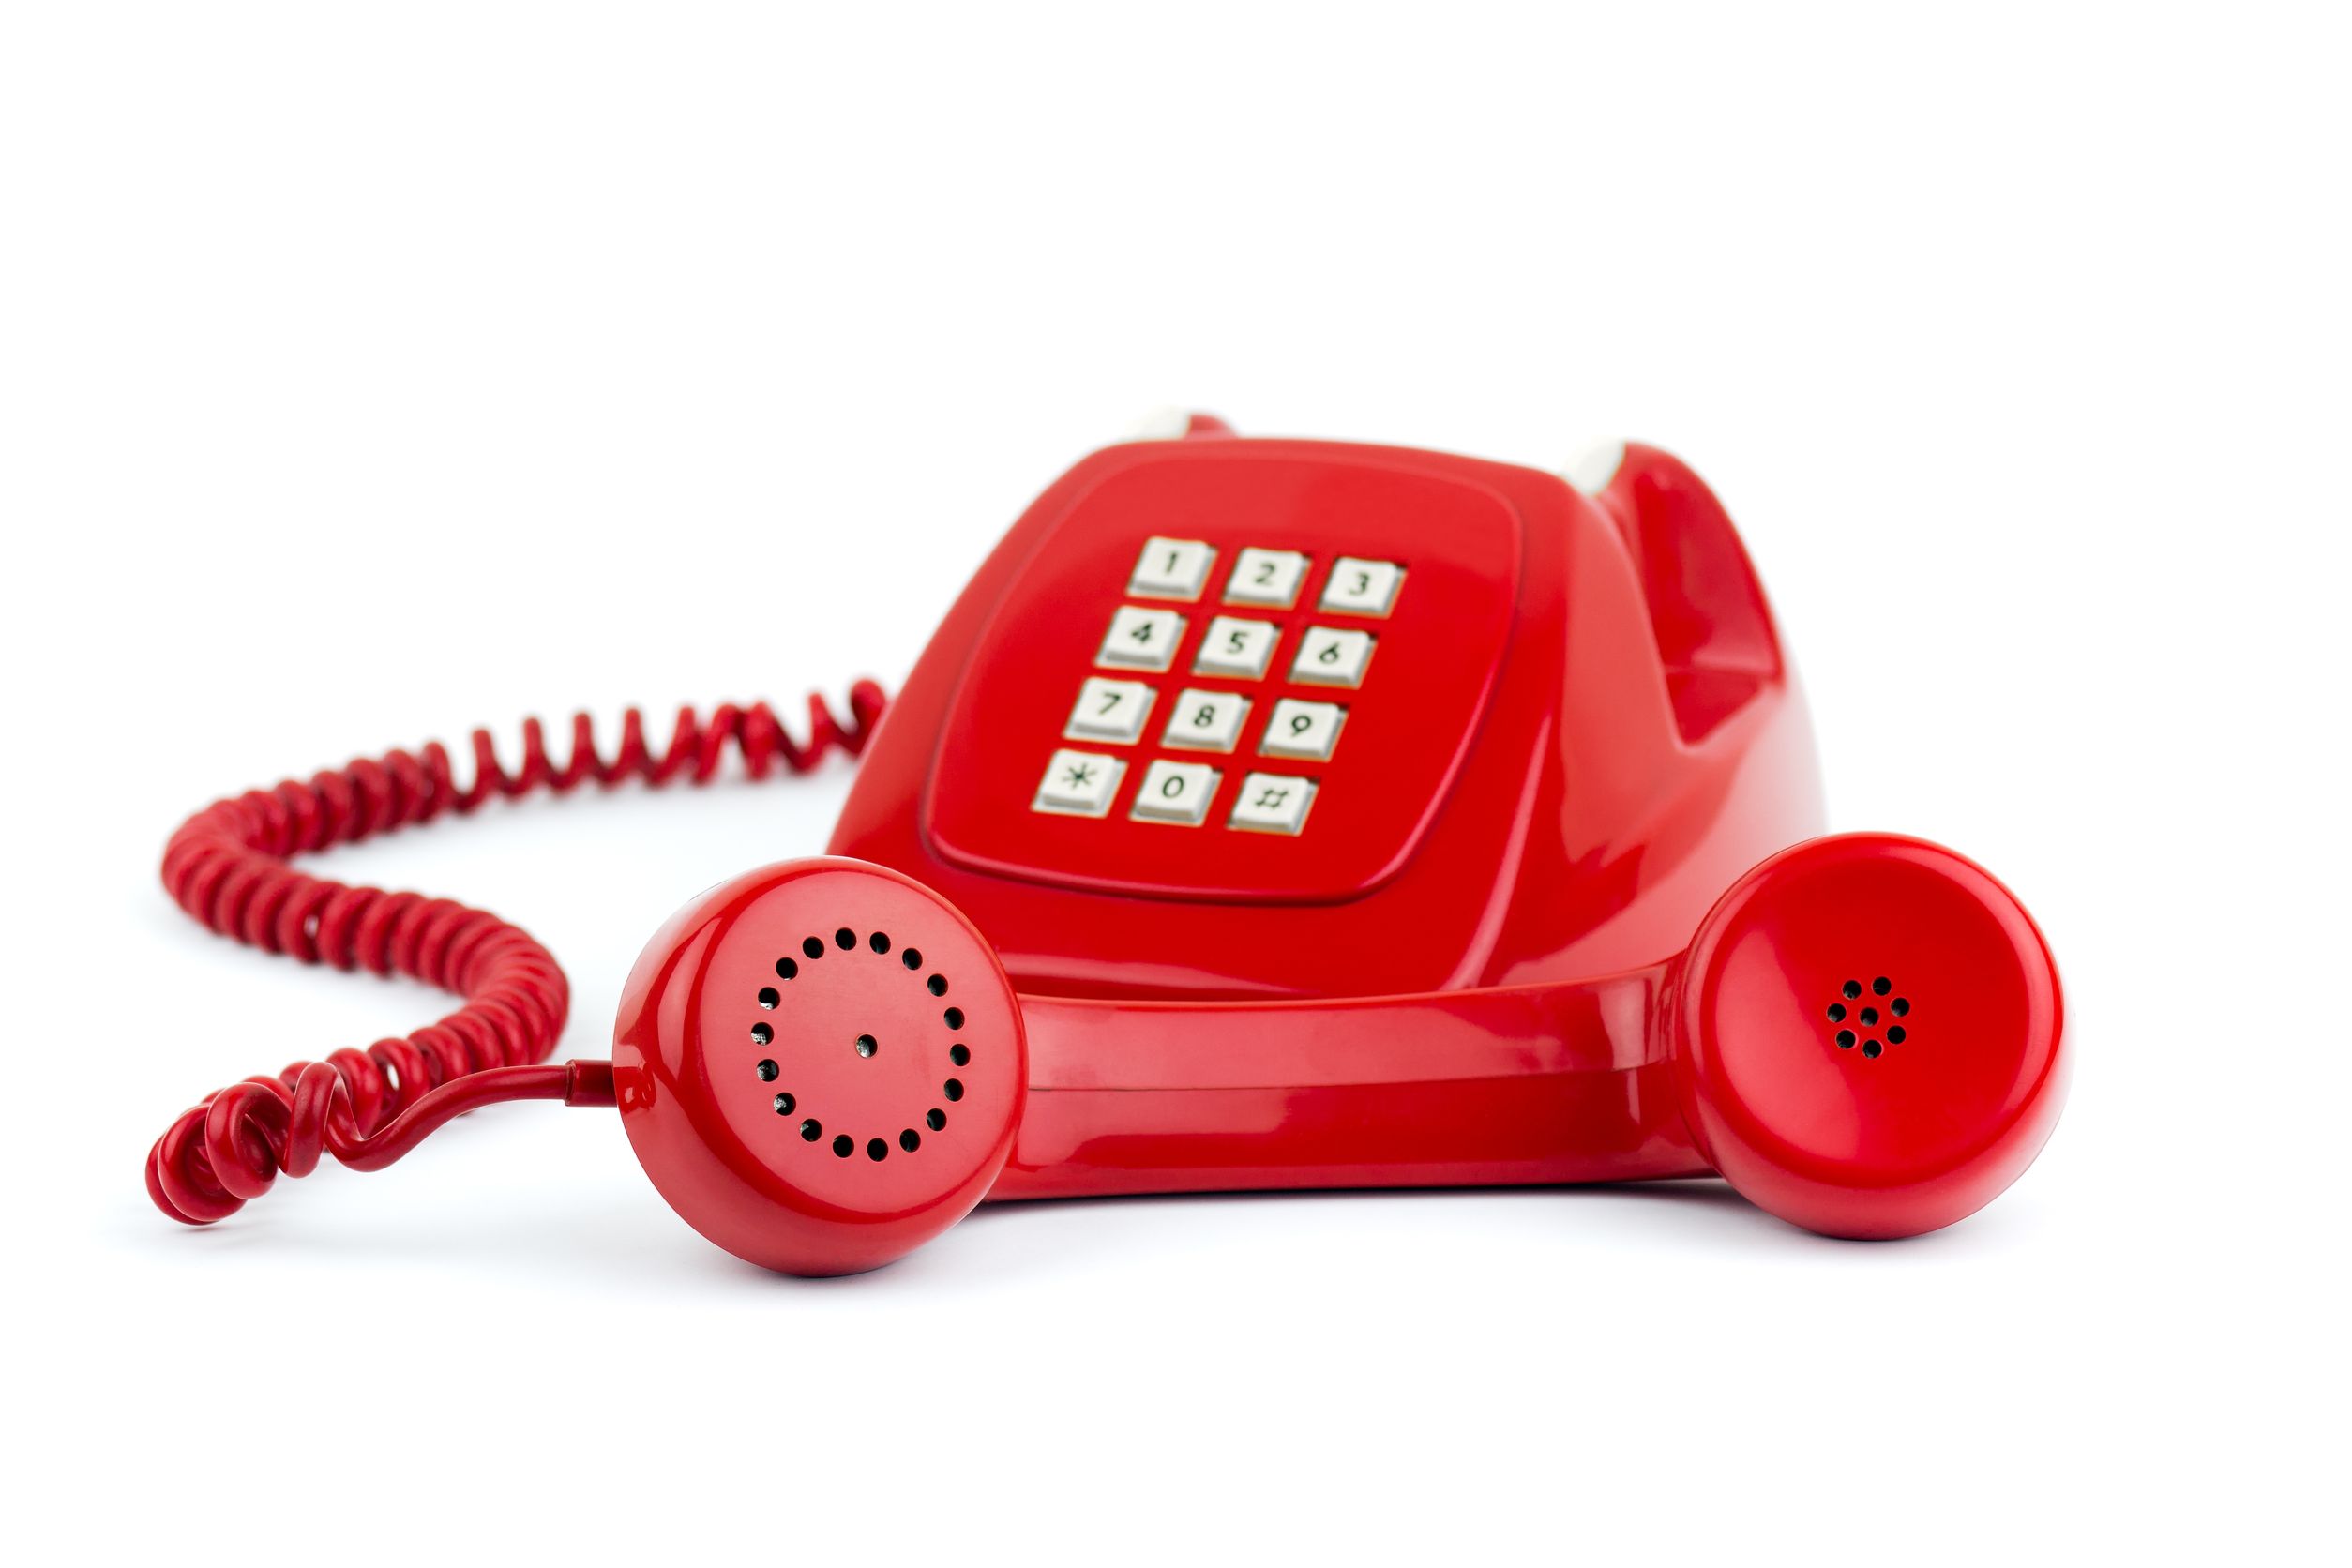 Телефон горячей линии быстро. Красный телефон. Горячая телефонная линия. Телефонная трубка. Телефон проводной красный.